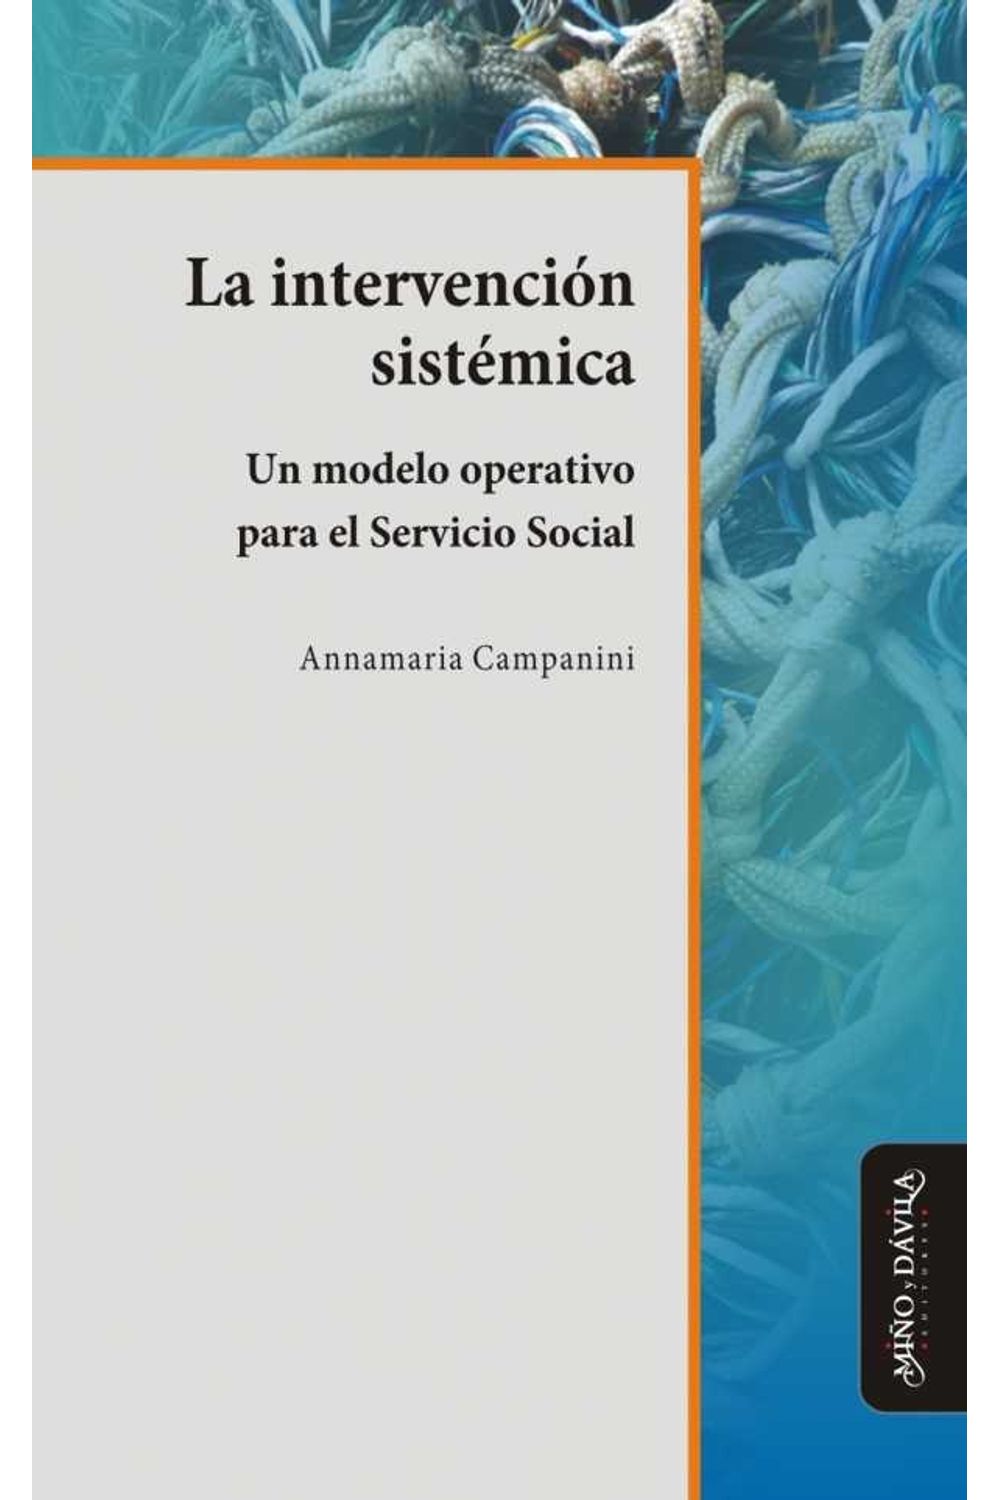 bm-la-intervencion-sistemica-mino-y-davila-editores-9788415295211